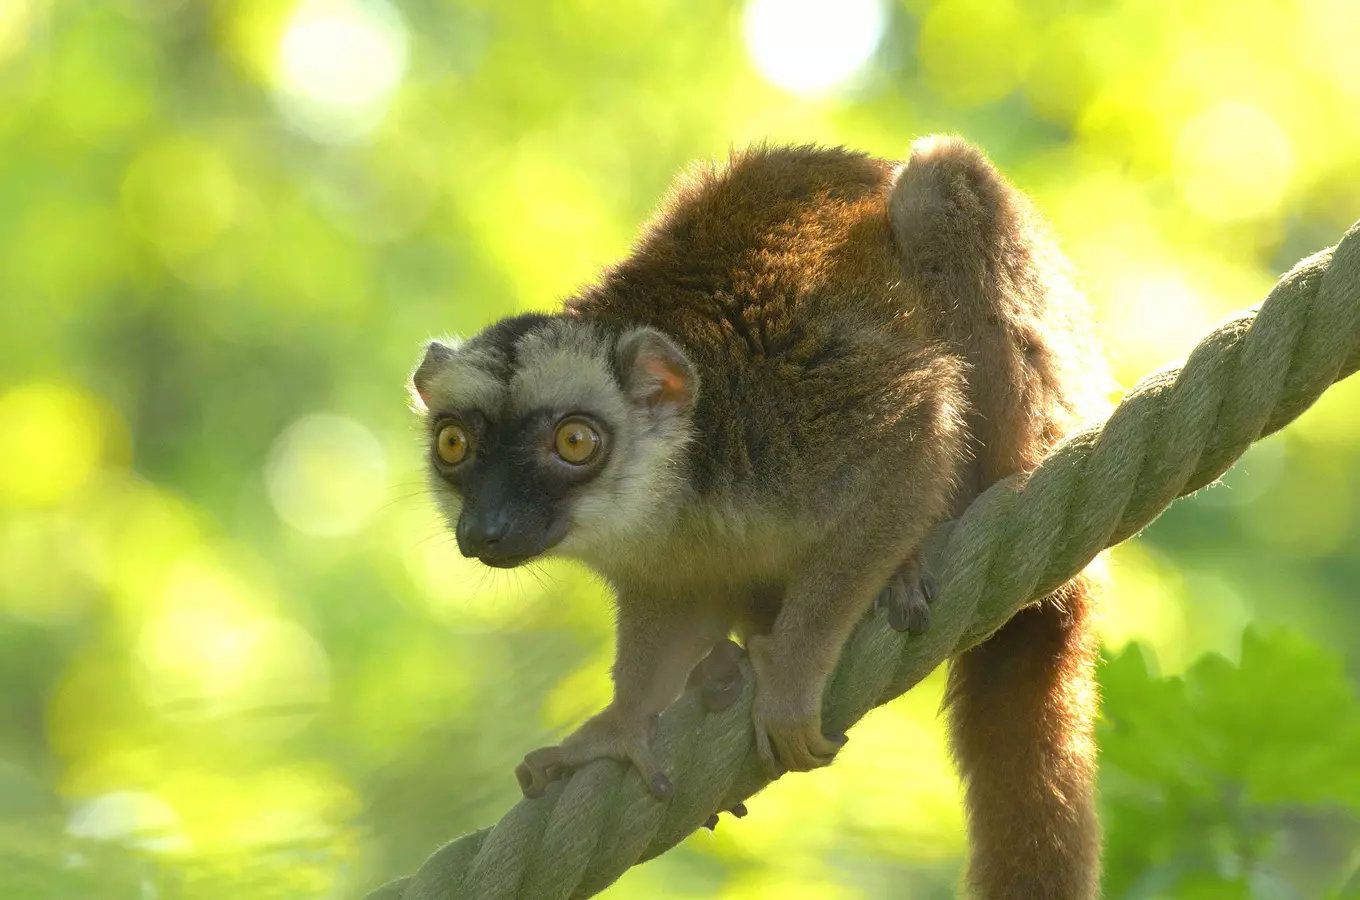 Ráj lemurů v Zoo Ostrava – blízké setkání s madagaskarskými primáty